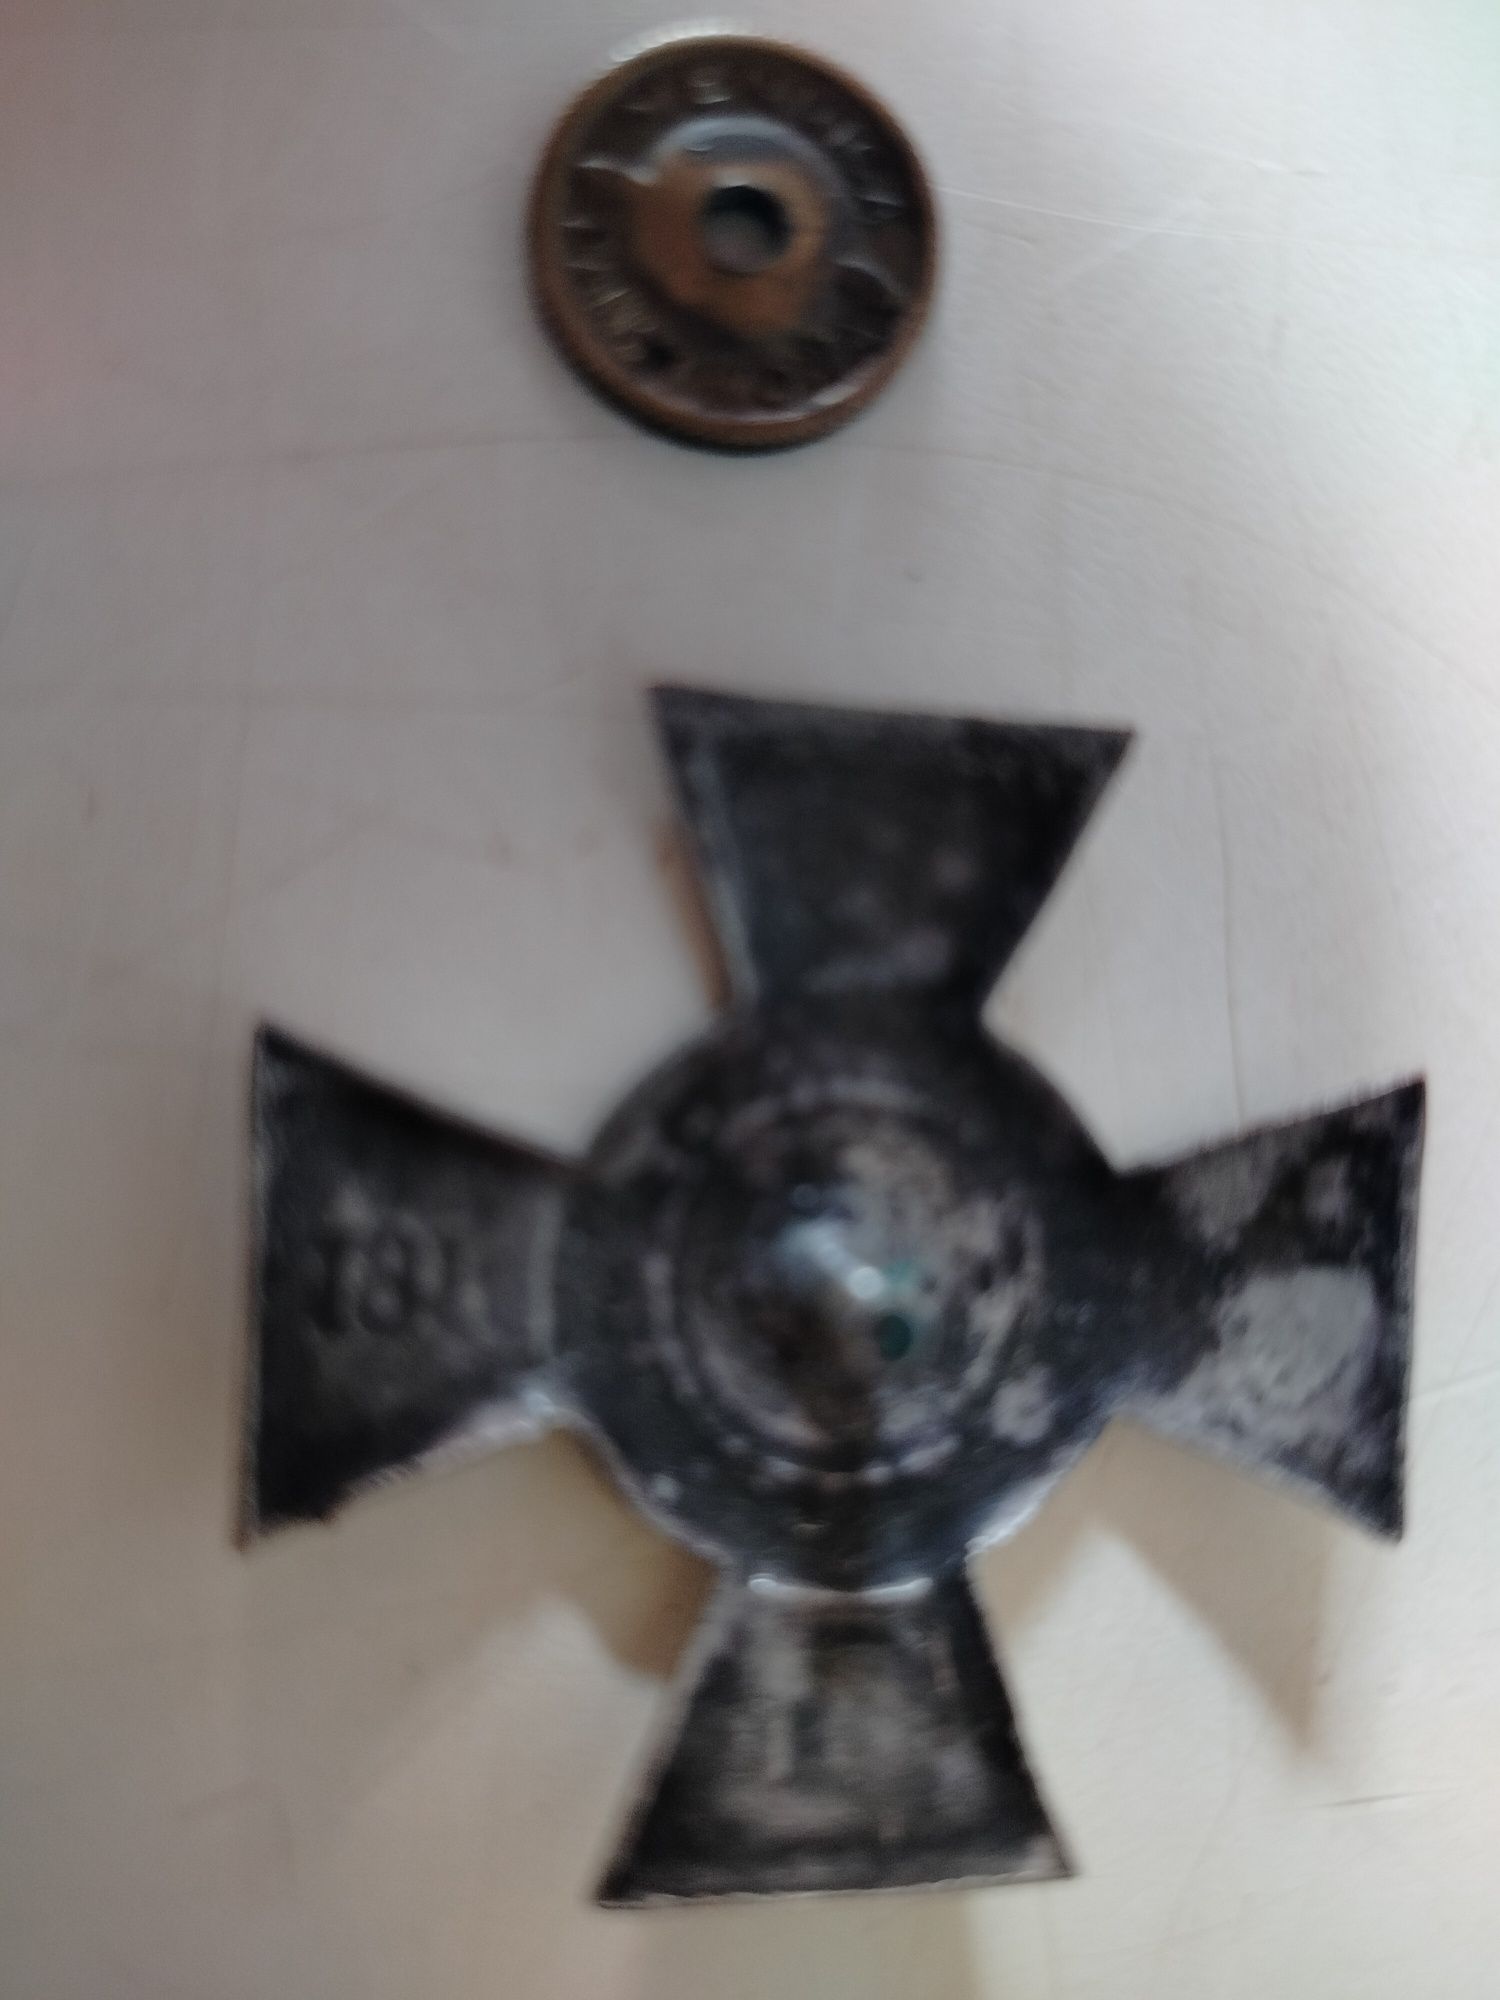 Krzyż Józefa Piłsudskiego